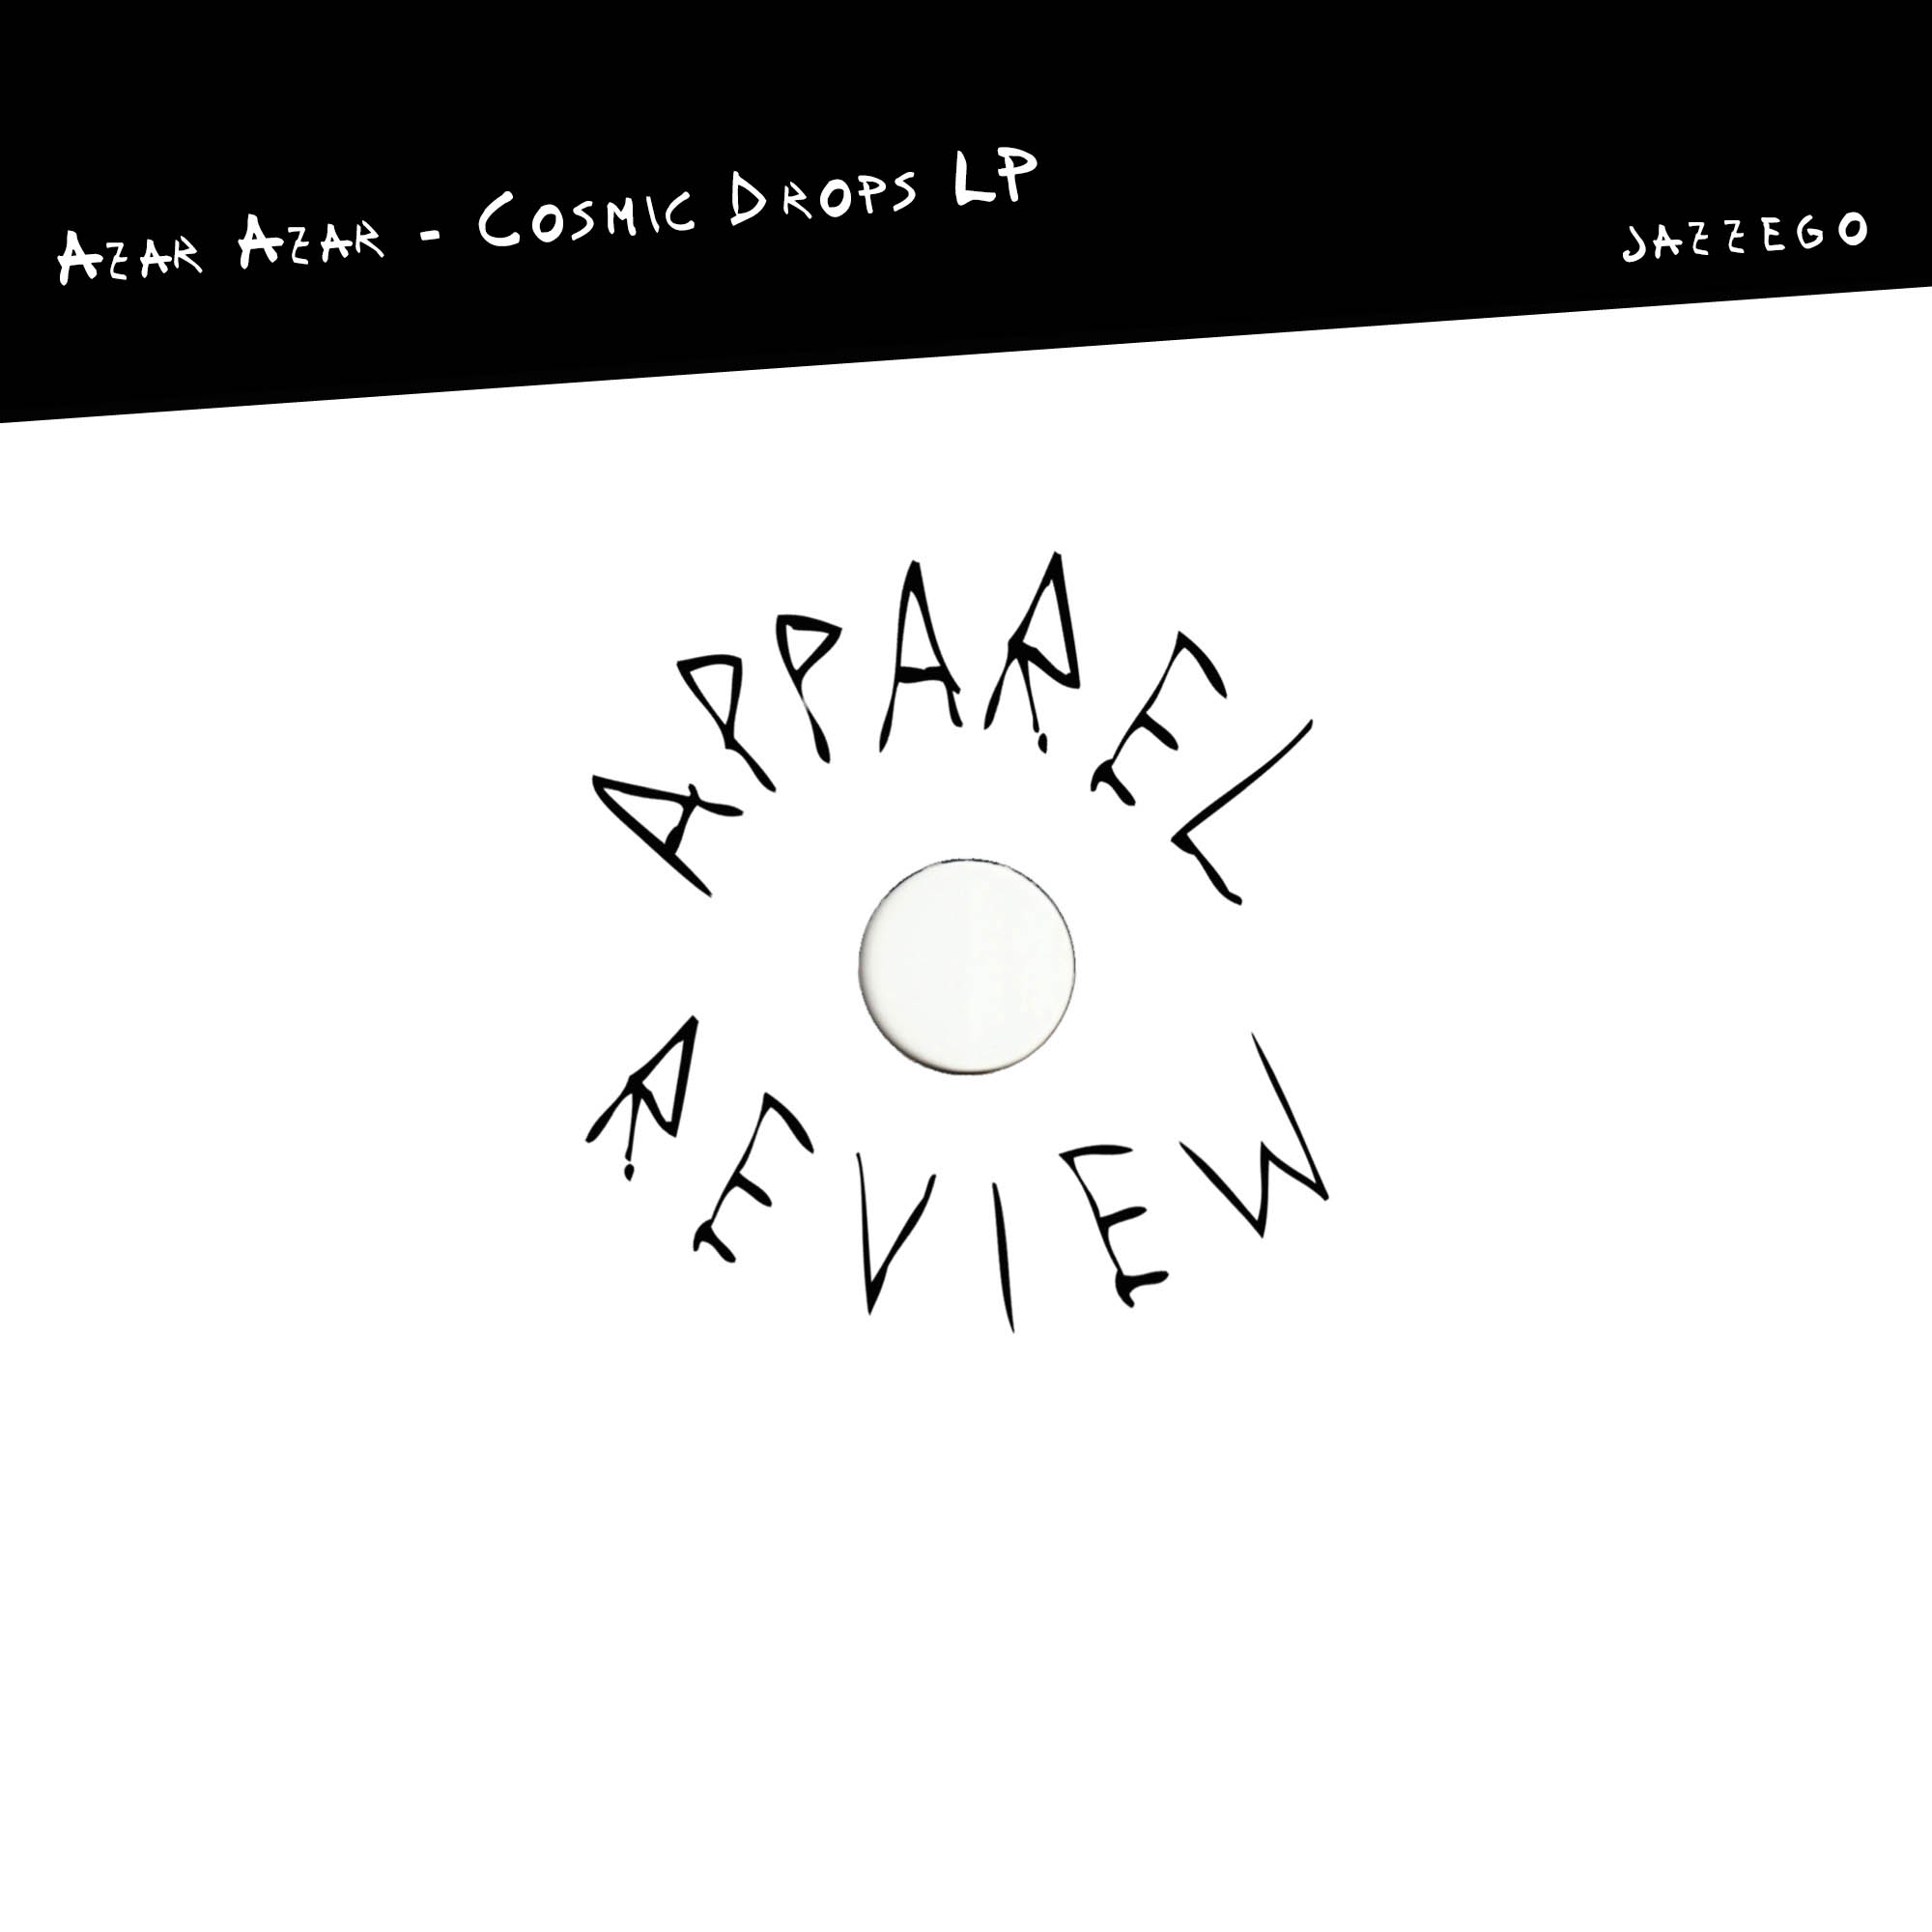 Apparel-Review Azar Azar – Cosmic Drops LP [Jazzego]